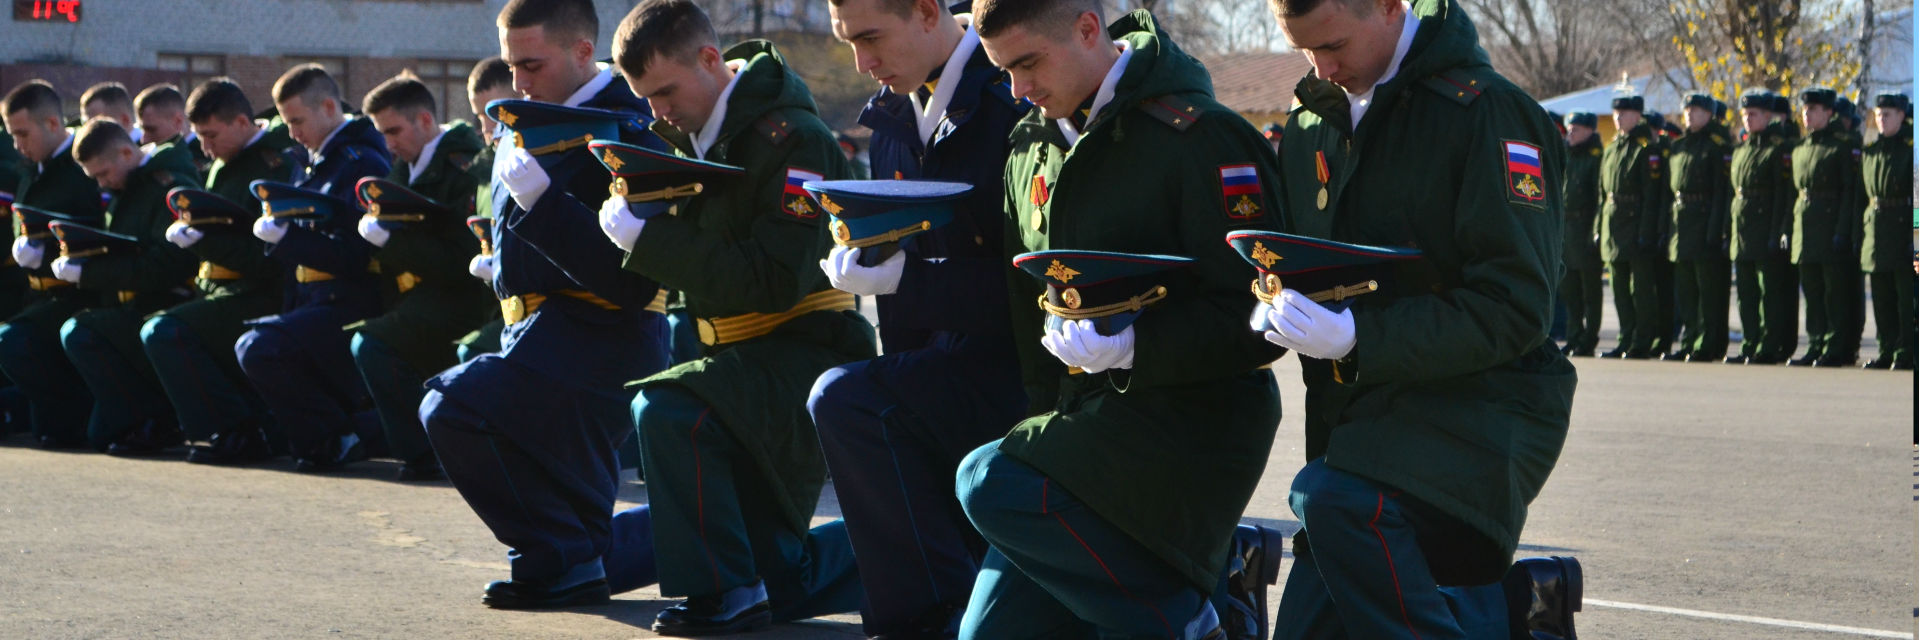 Традиции офицеров: как прошёл 86 выпуск в Казанском танковом училище